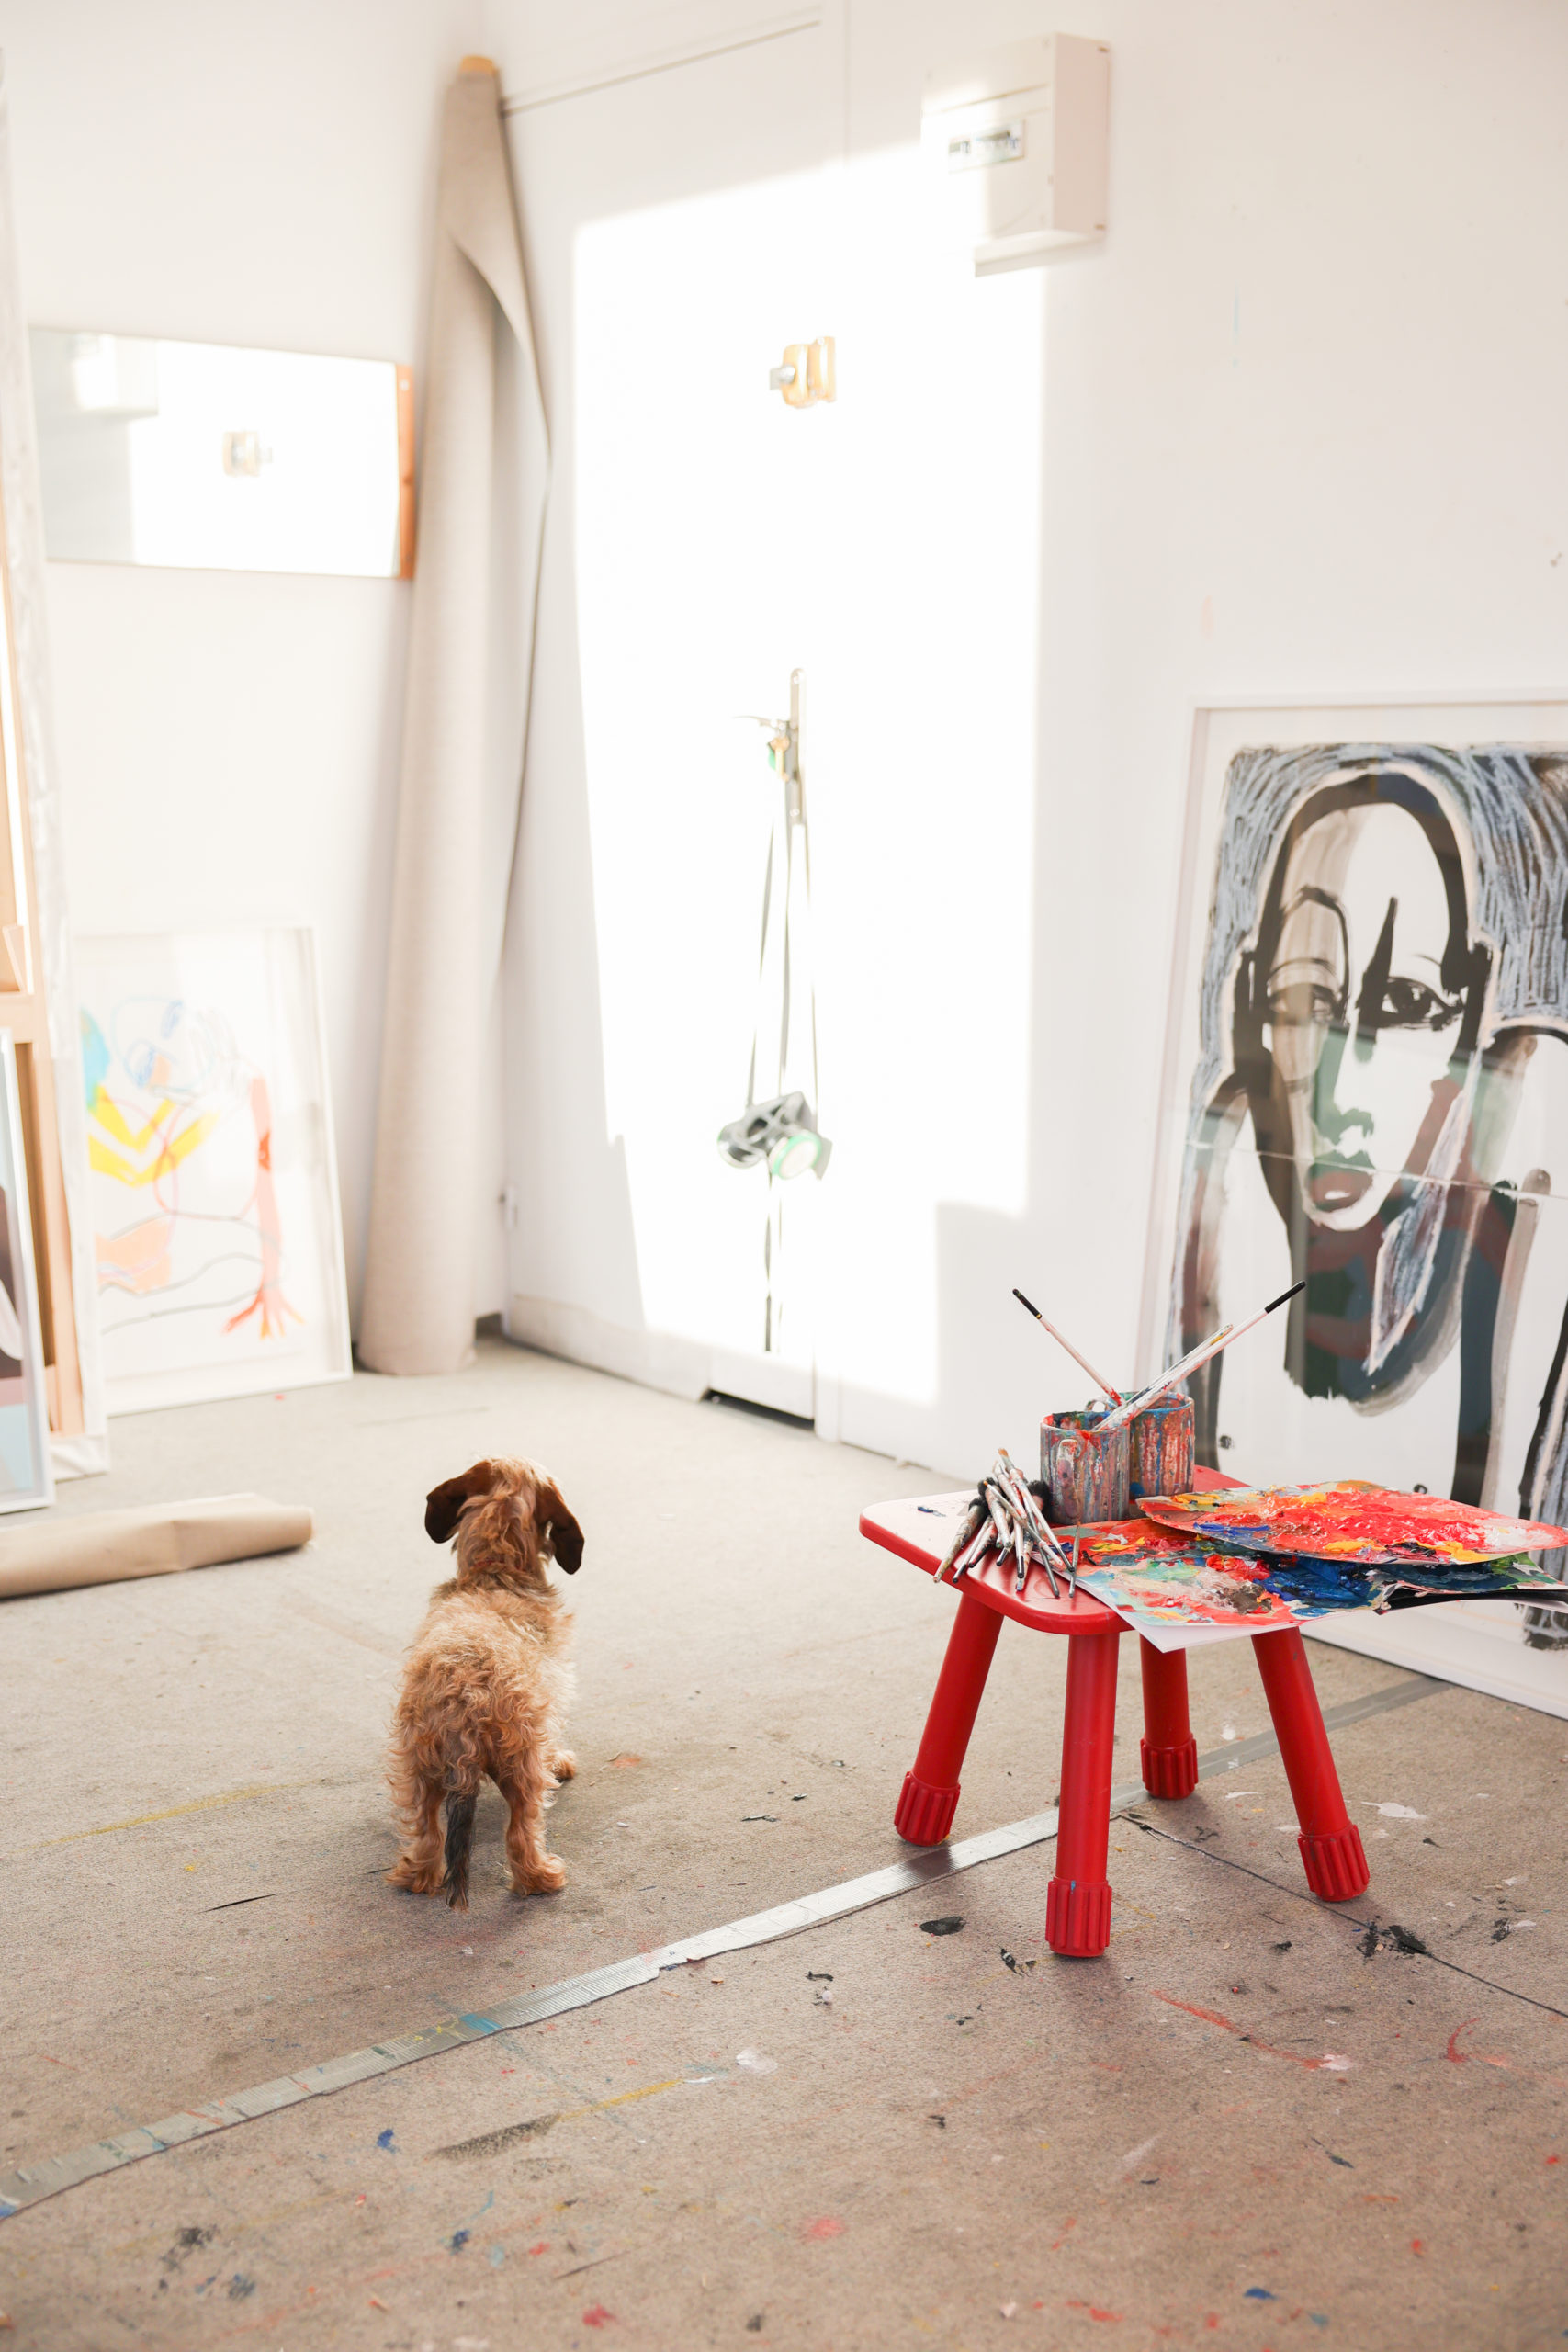 Le chien de Camille Cottier attendant devant la porte de son atelier à côté d'un tabouret recouvert de palette de peinture et pinceaux